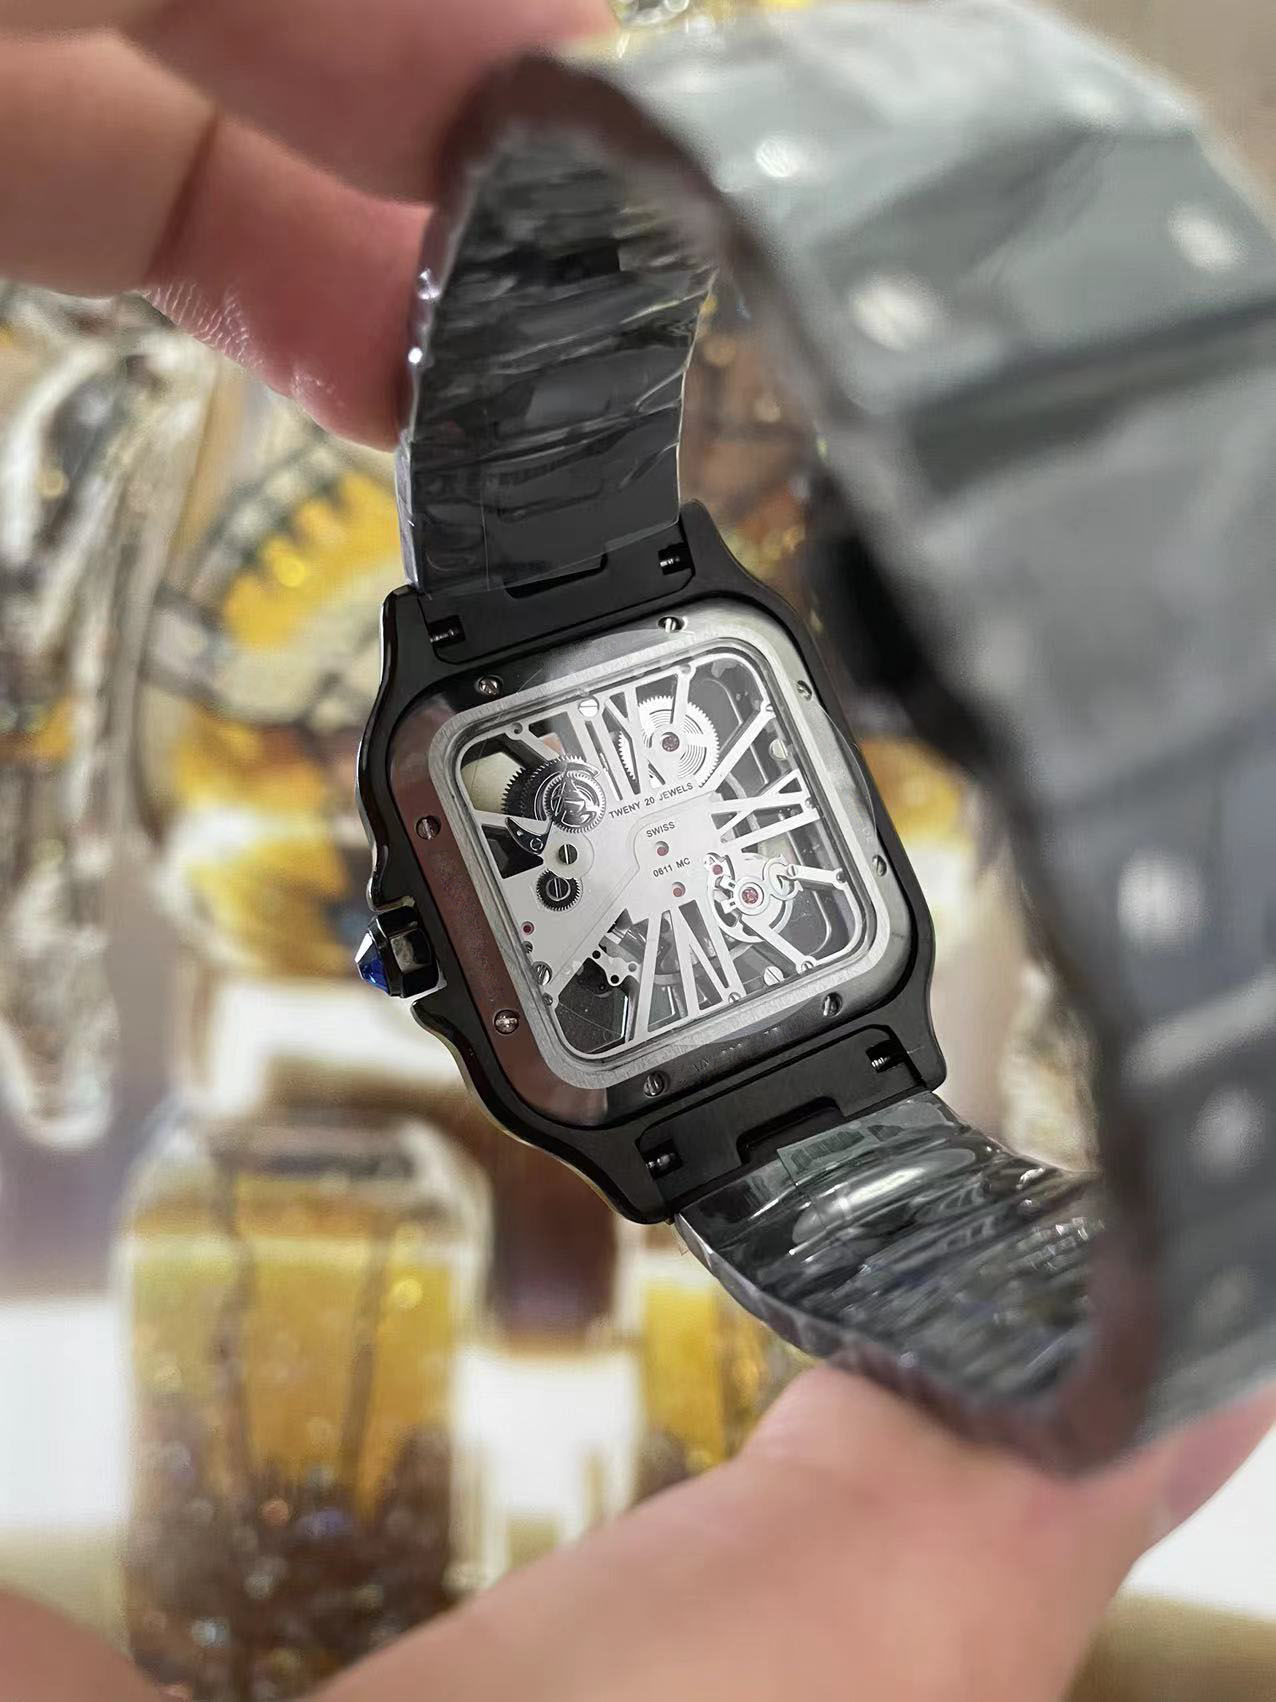 Relógios de esqueleto de alta qualidade inteiros para movimento de quartzo vidro safira preto aço inoxidável Strap275o